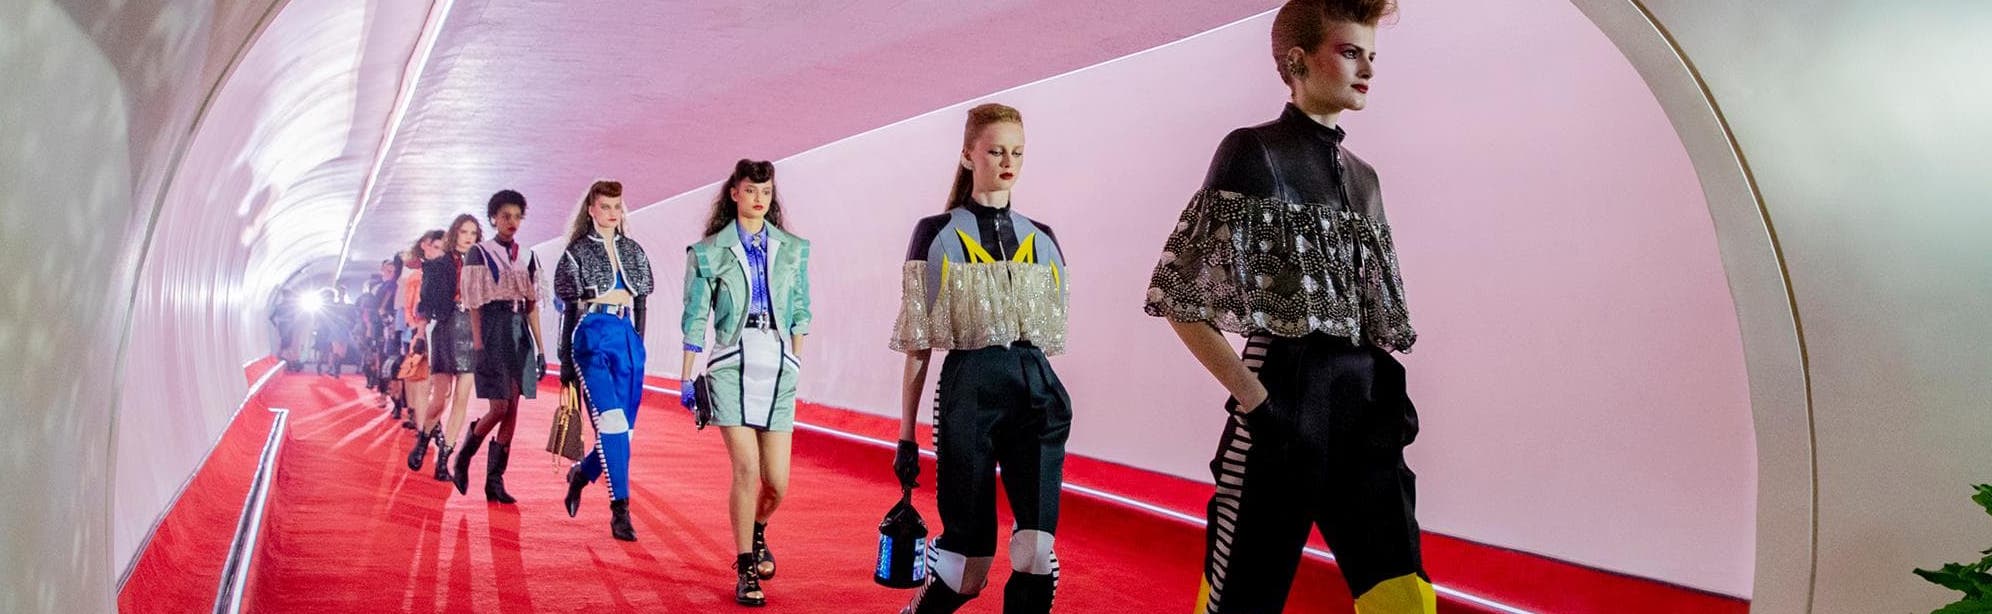 MANIFESTO - TAKING OFF: Louis Vuitton Women's Cruise 2020 Fashion